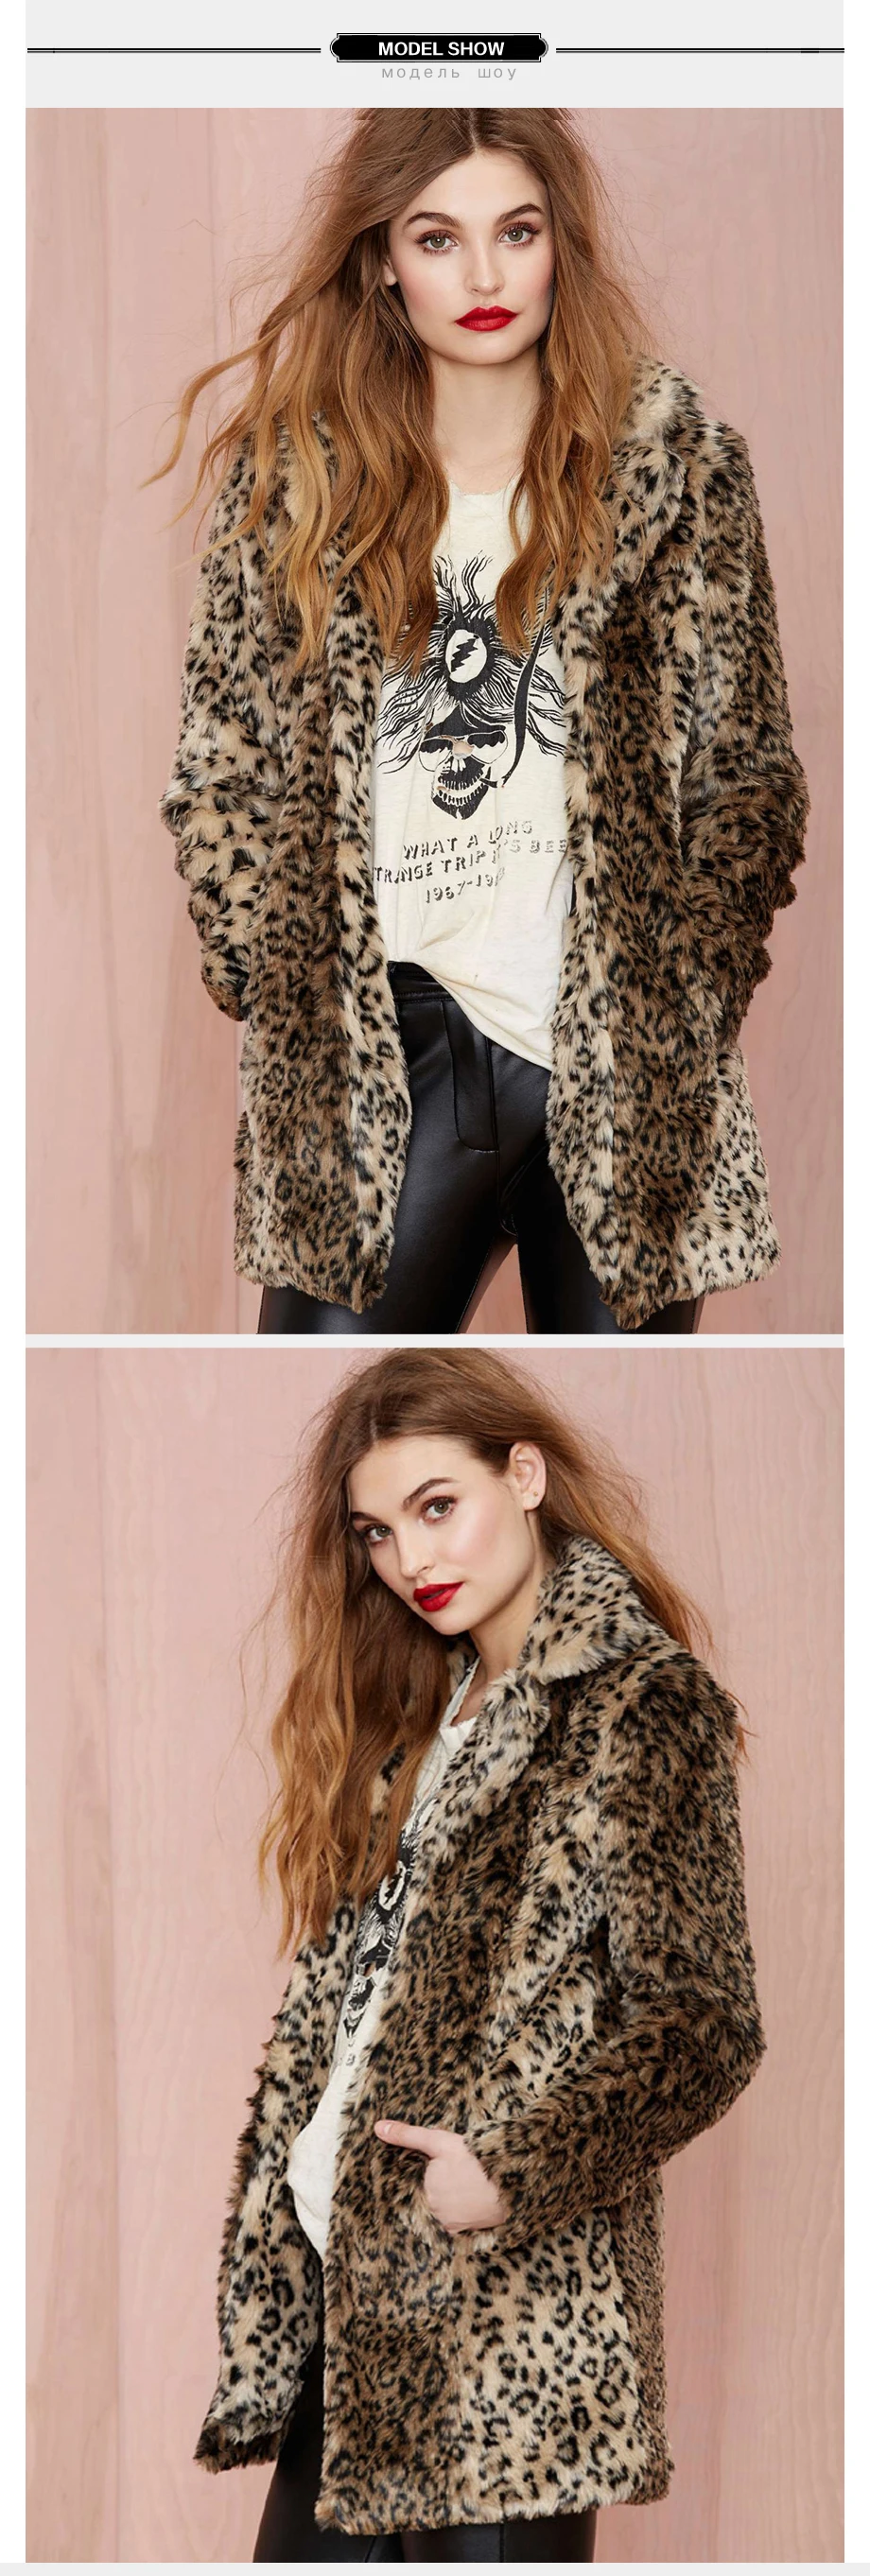 A Forever S-6XL размера плюс зимнее женское пальто из искусственного меха леопардовое пальто модная теплая толстая верхняя одежда роскошное пальто для леди af731